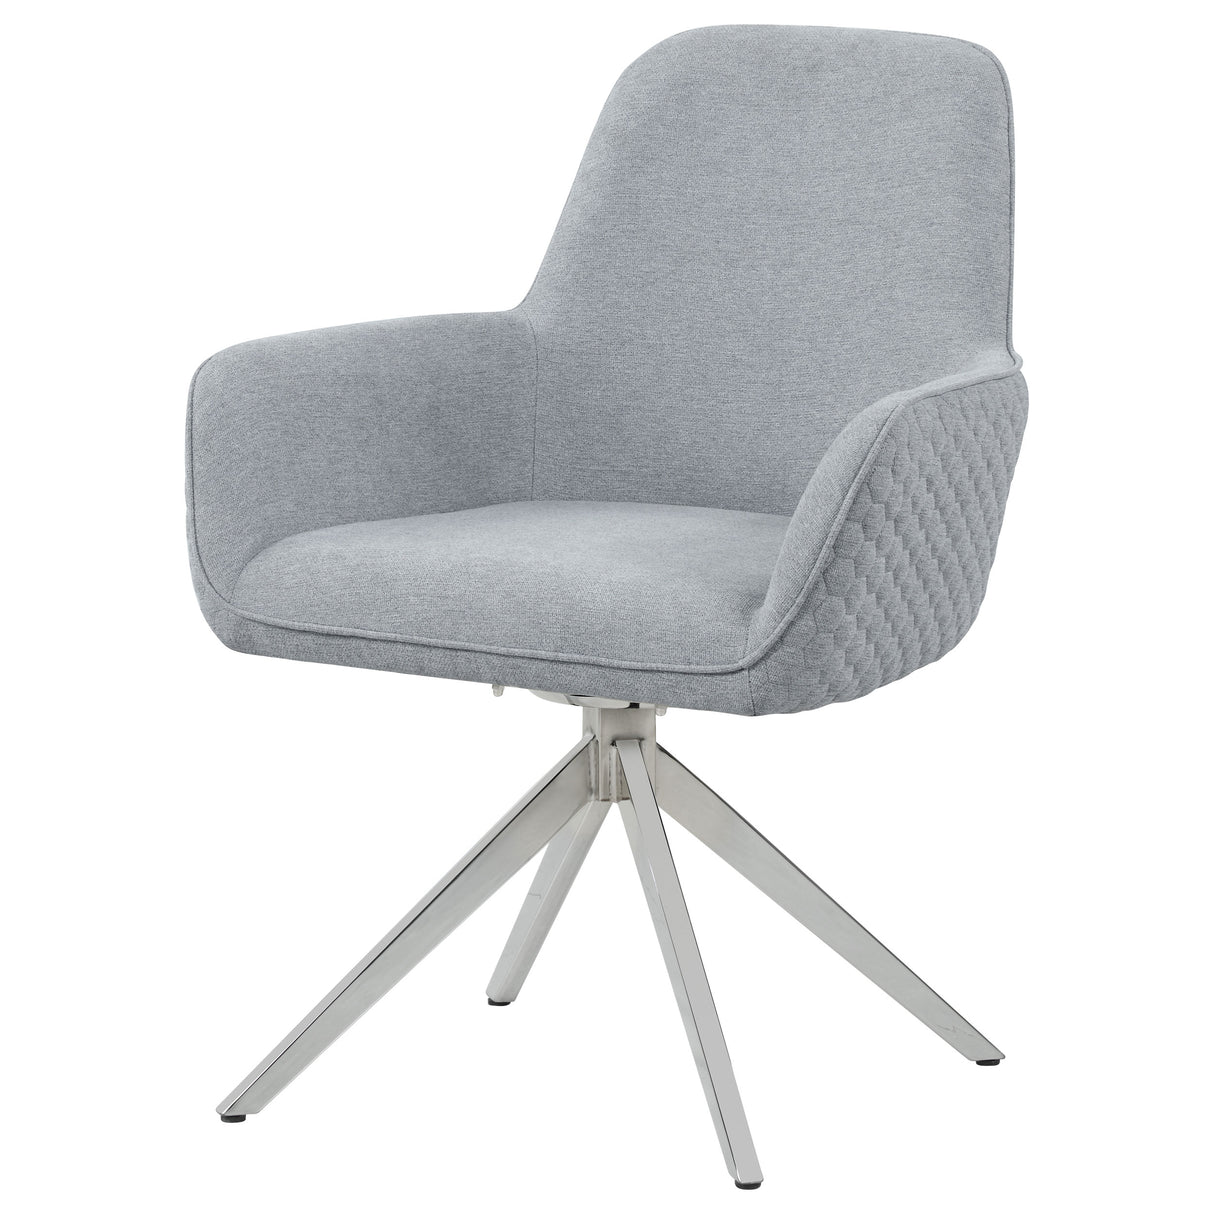 Swivel Arm Chair - Abby Flare Arm Side Chair Light Grey and Chrome